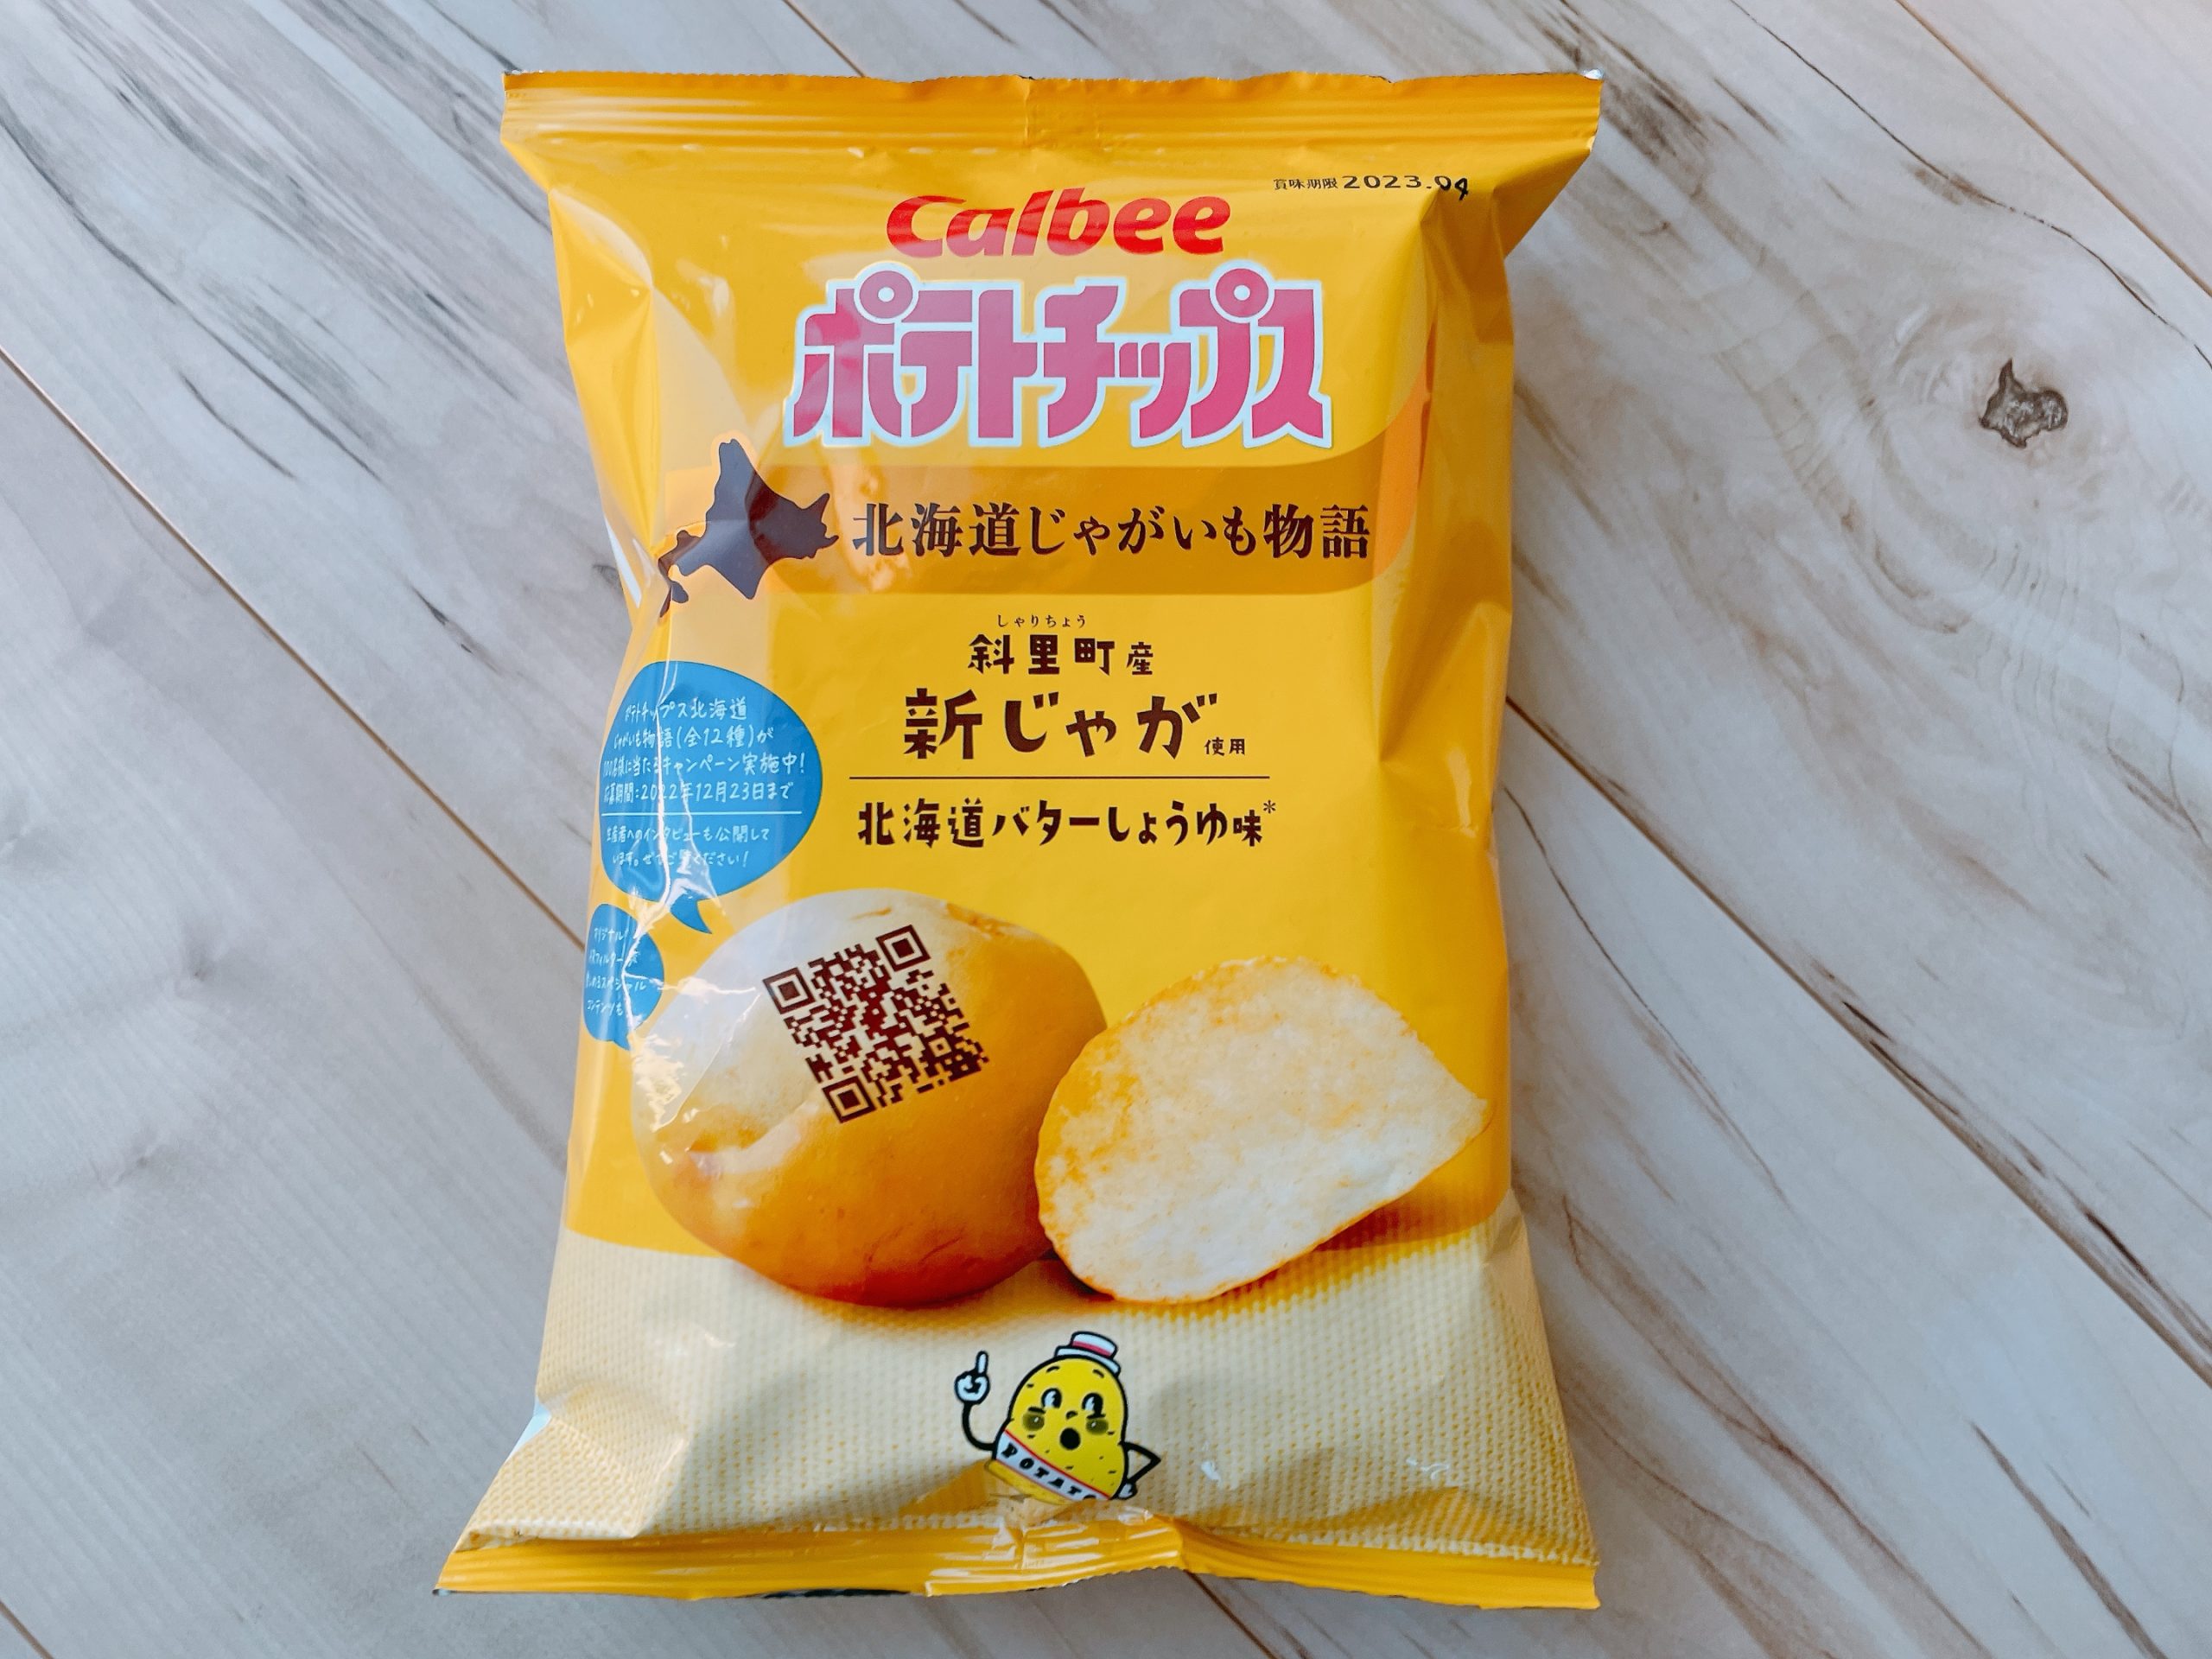 ポテトチップス 北海道じゃがいも物語 斜里町産新じゃが使用 北海道バターしょうゆ味、パッケージ